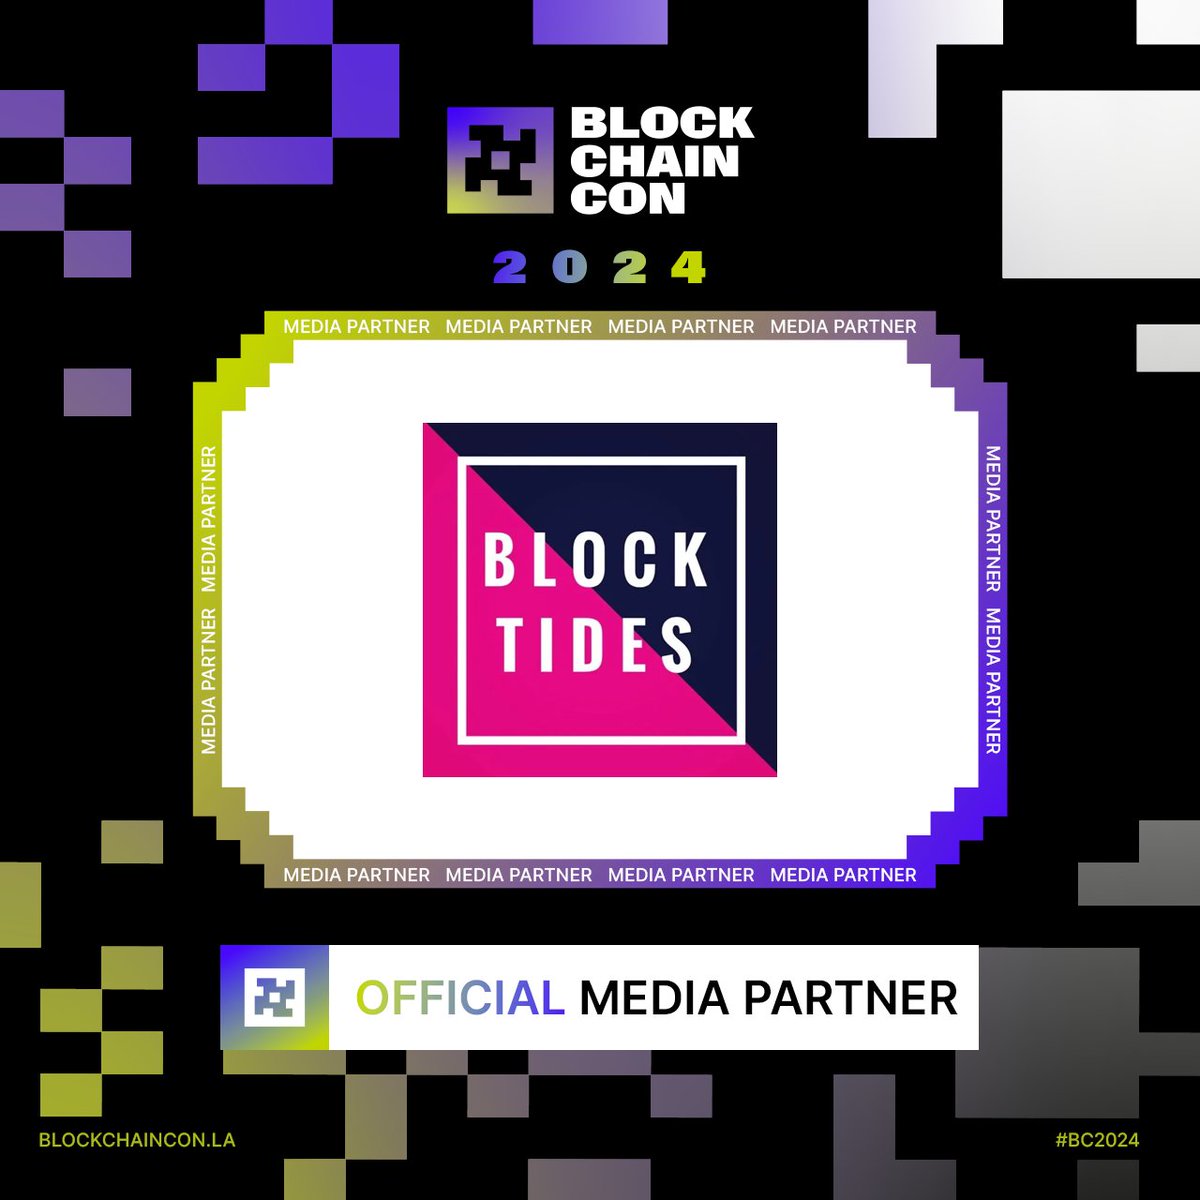 ¡Nos emociona anunciar a @blocktides  como Media Partner Oficial! 🎉

📰 Únete a nosotros en #BC2024 y descubre las últimas noticias del mundo blockchain 🚀

¡No te pierdas ni un solo detalle de este evento revolucionario! 💼🌐

#Blockchain